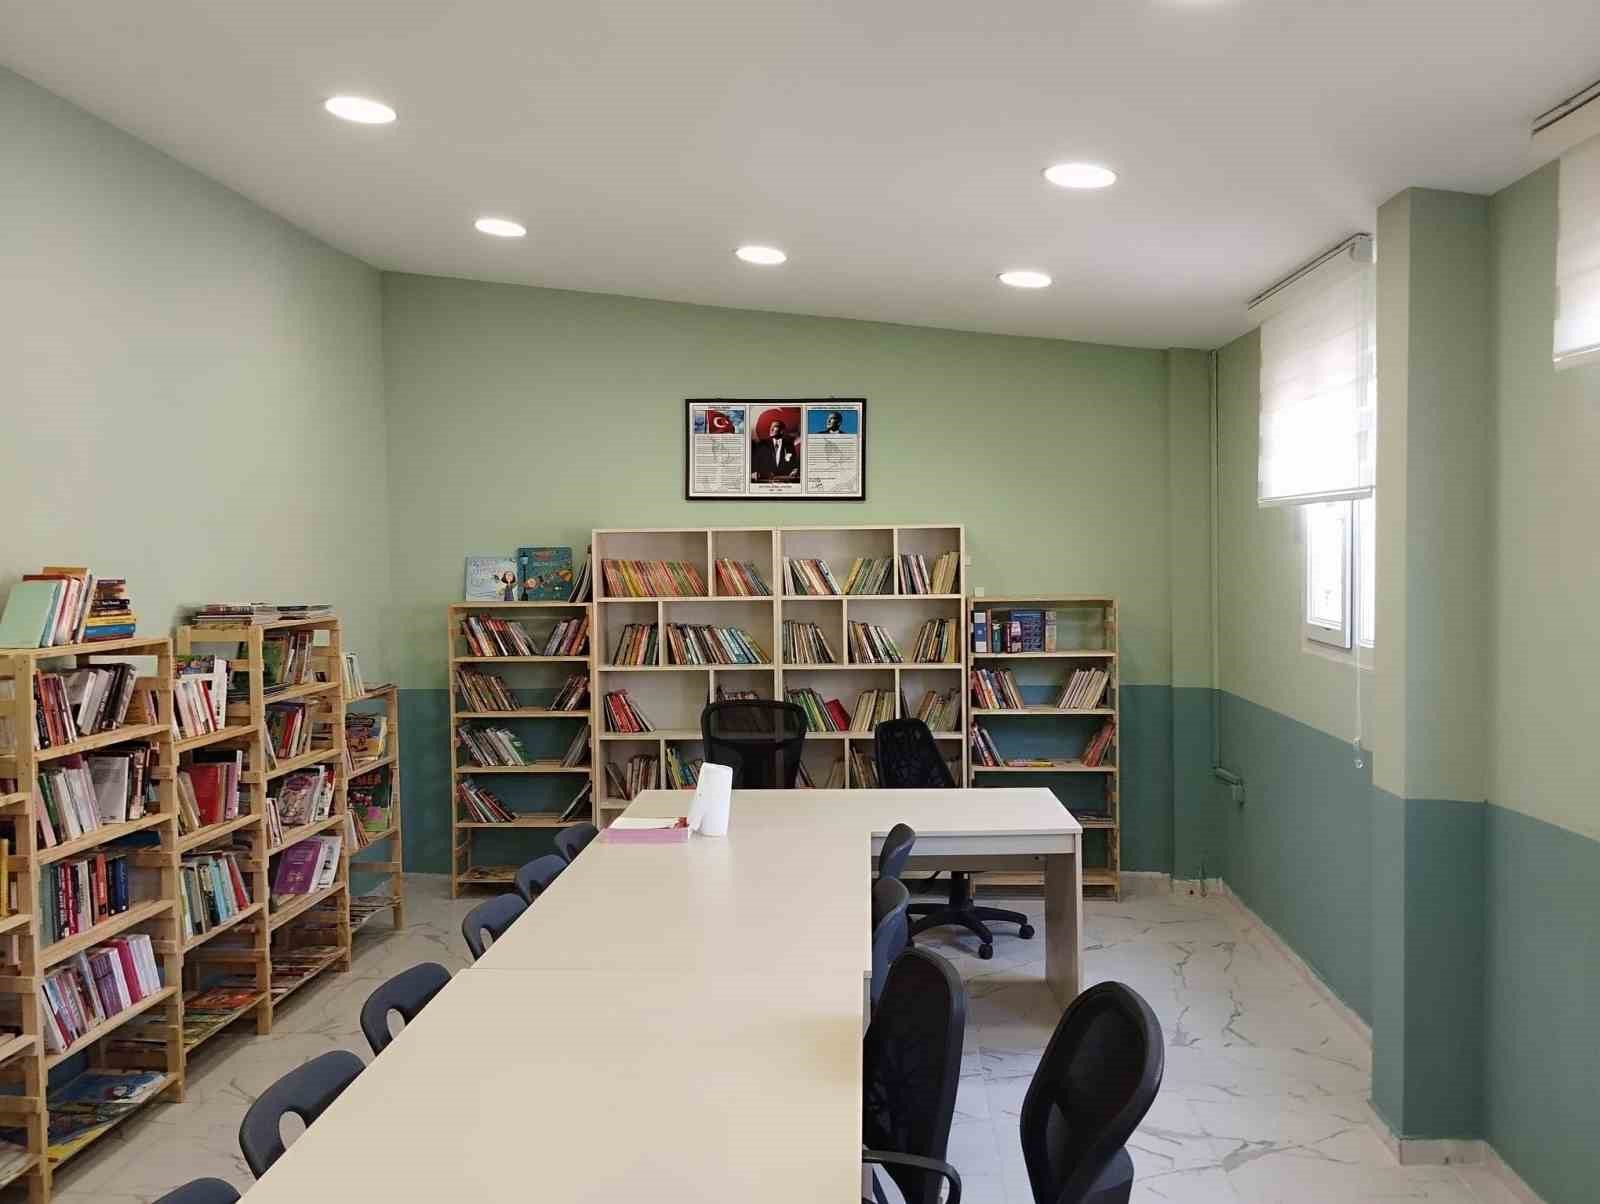 depremzede çocuklar için prefabrik okula kütüphane kuruldıu